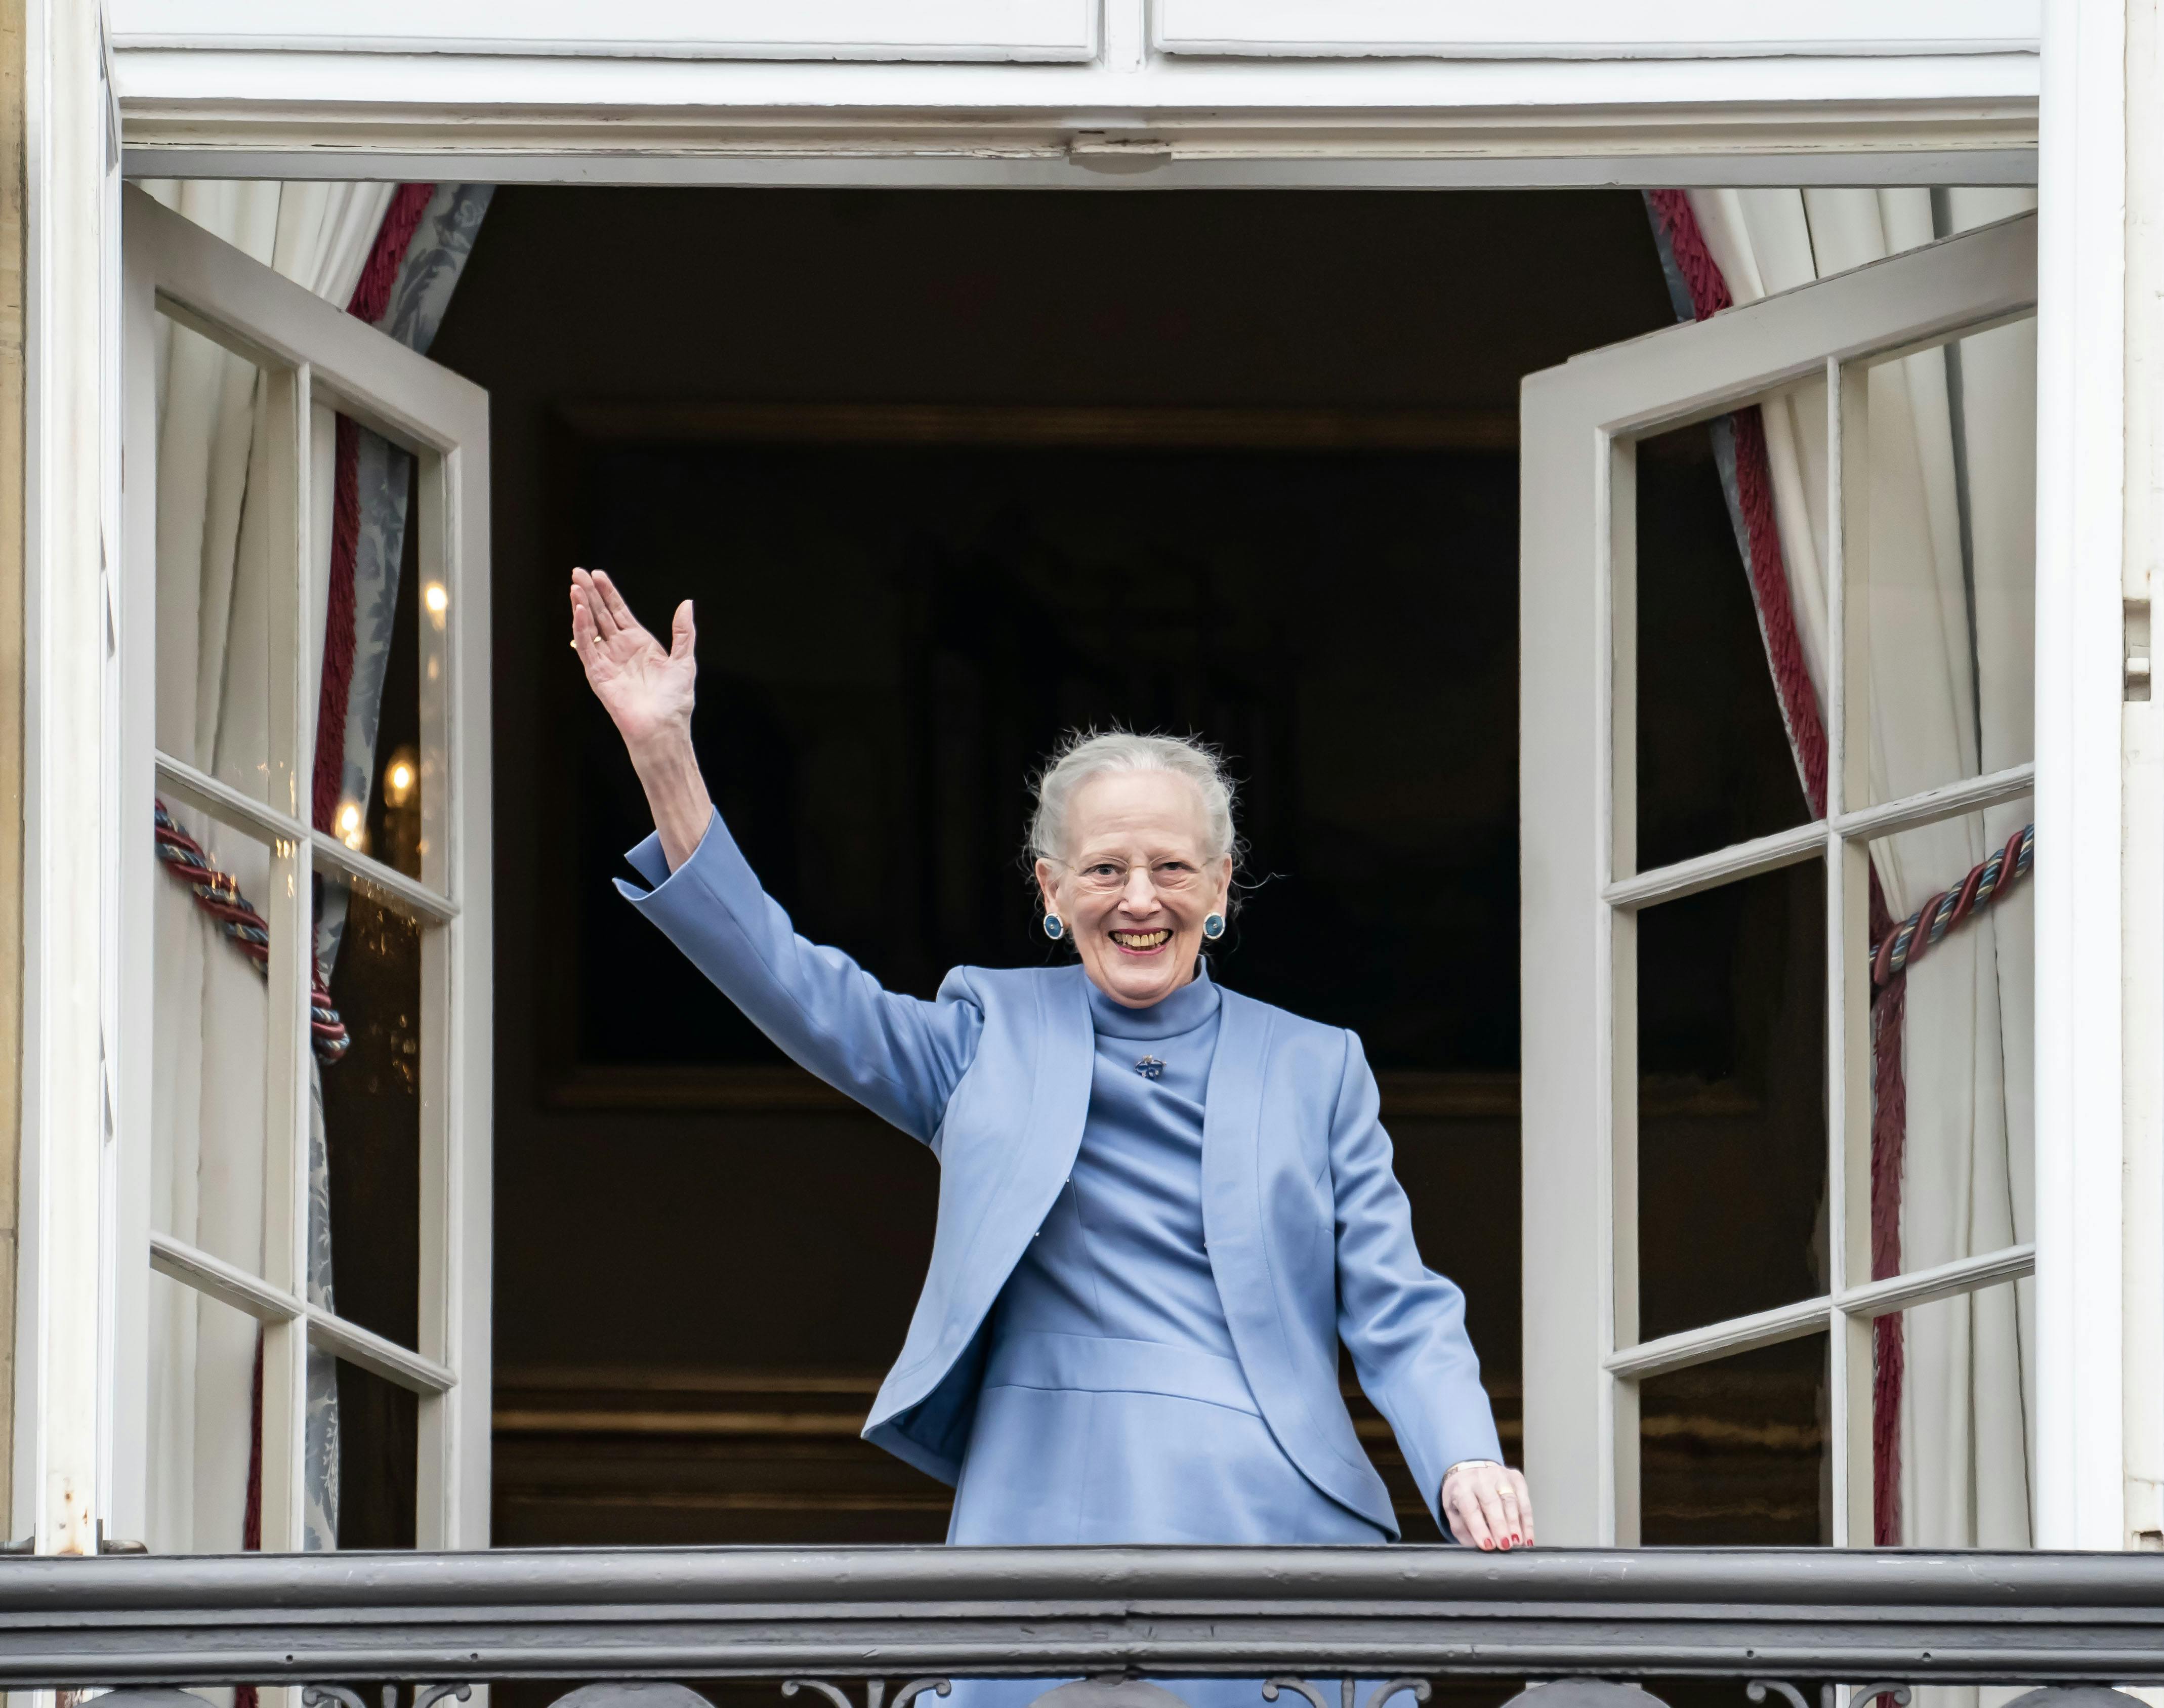 Dronning Margrethe fejrer i år sin første fødselsdag, siden hun abdicerede. I år bliver fejringen derfor også anderledes, da fødselsdagen markeres privat på Fredensborg Slot.